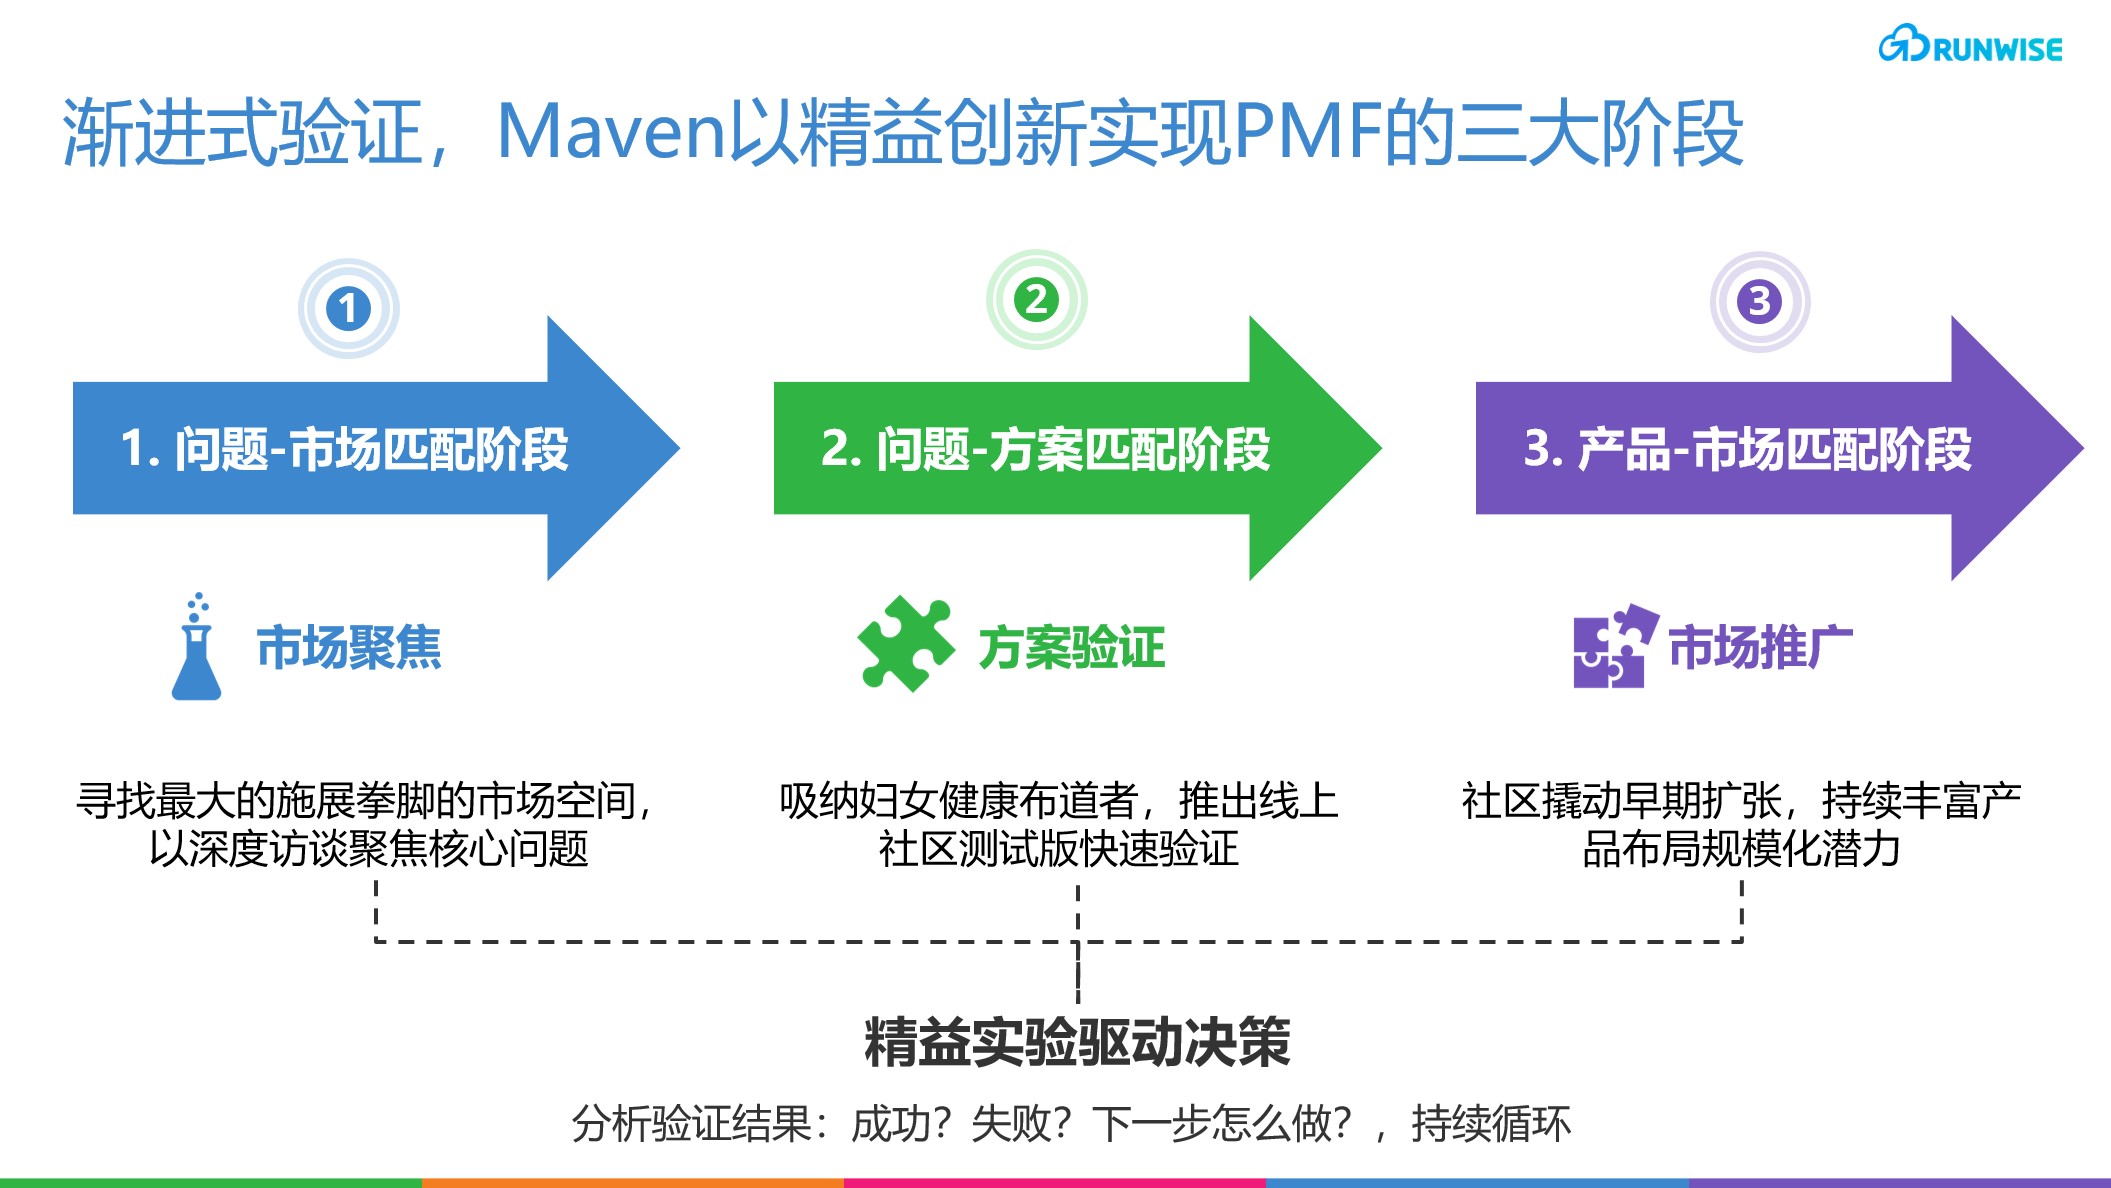 远程医疗平台Maven